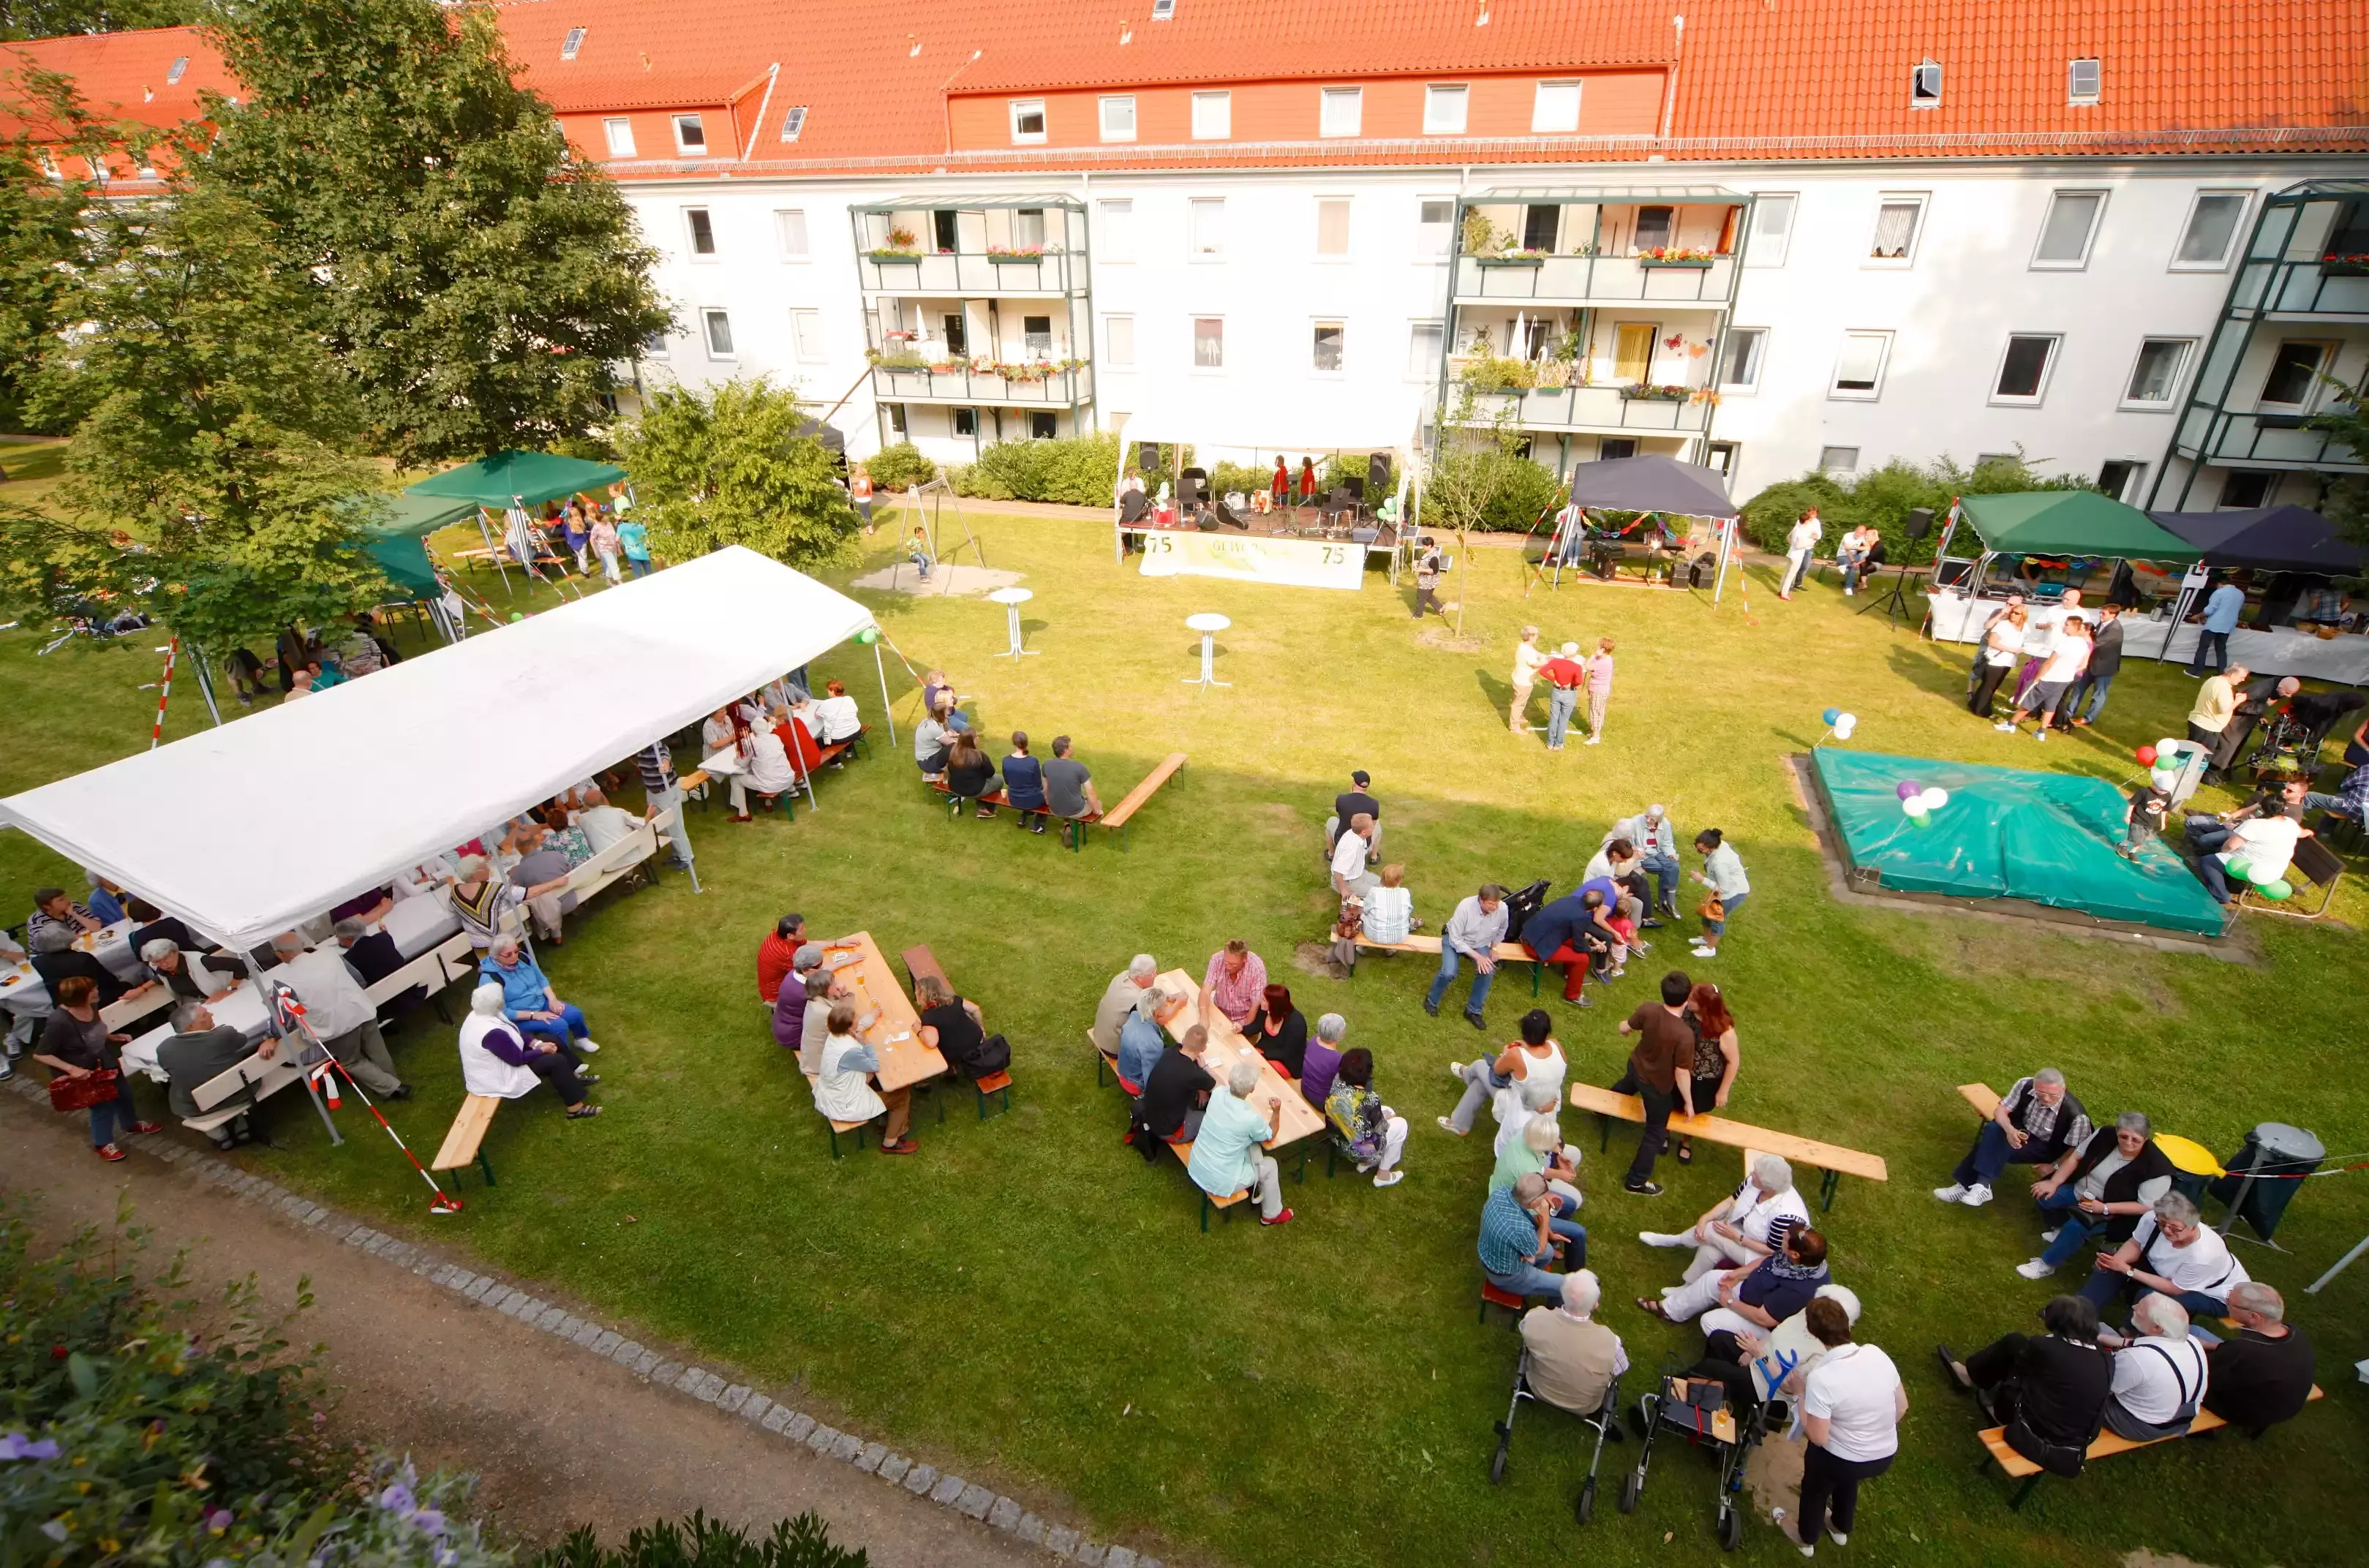 Menschen auf Bierbänken bei einem sonnigen Gartenfest hinter einem Wohnblock